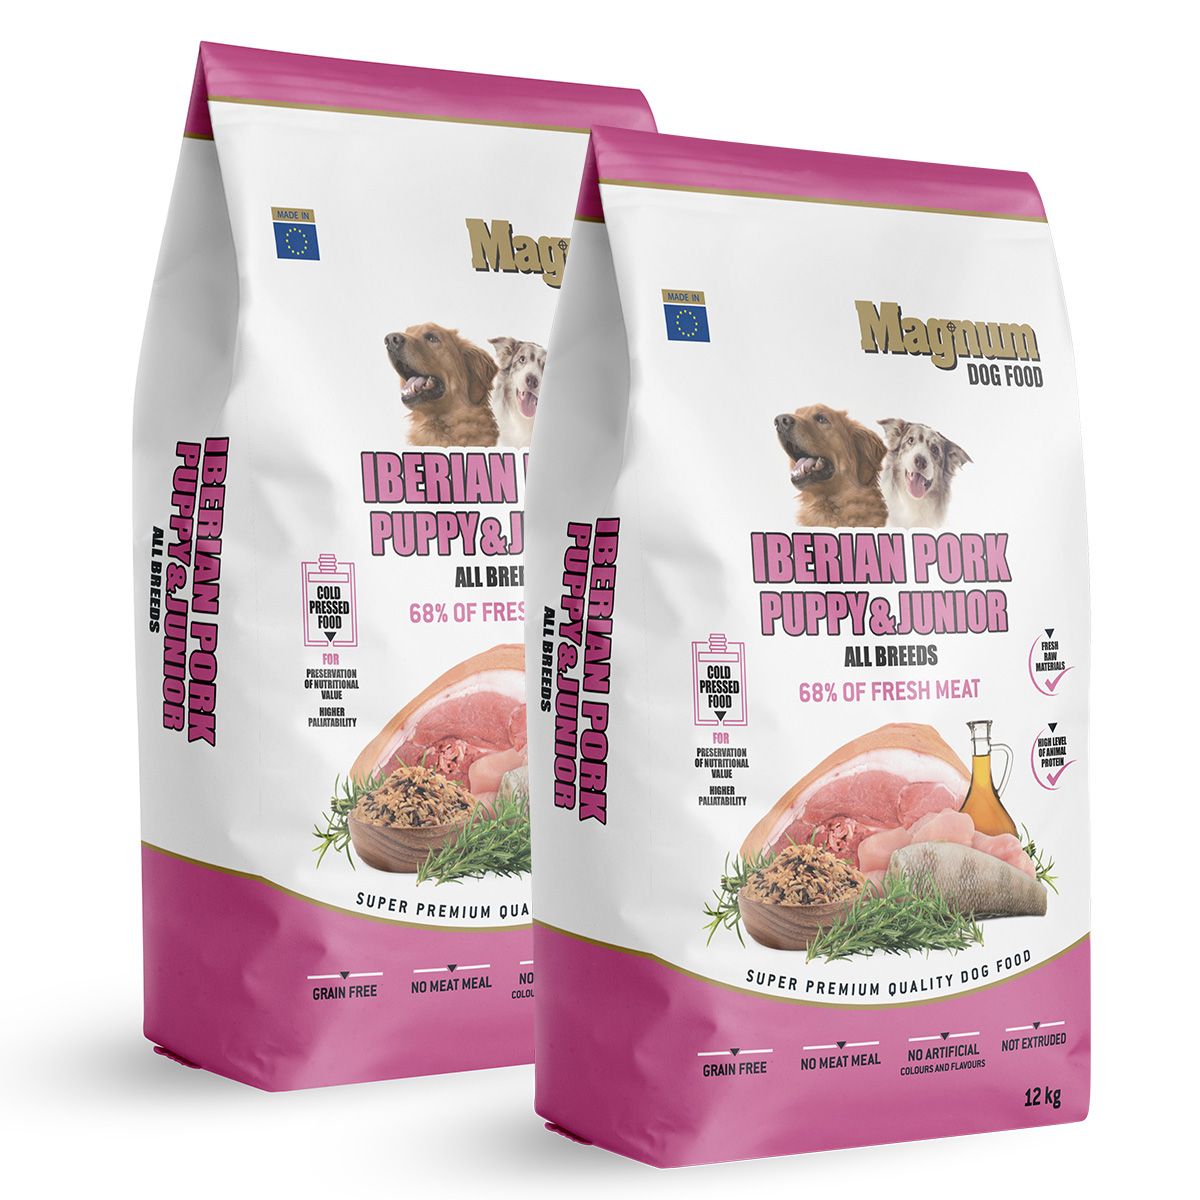 Magnum Iberian Pork Puppy & Junior 24kg Magnum dog food